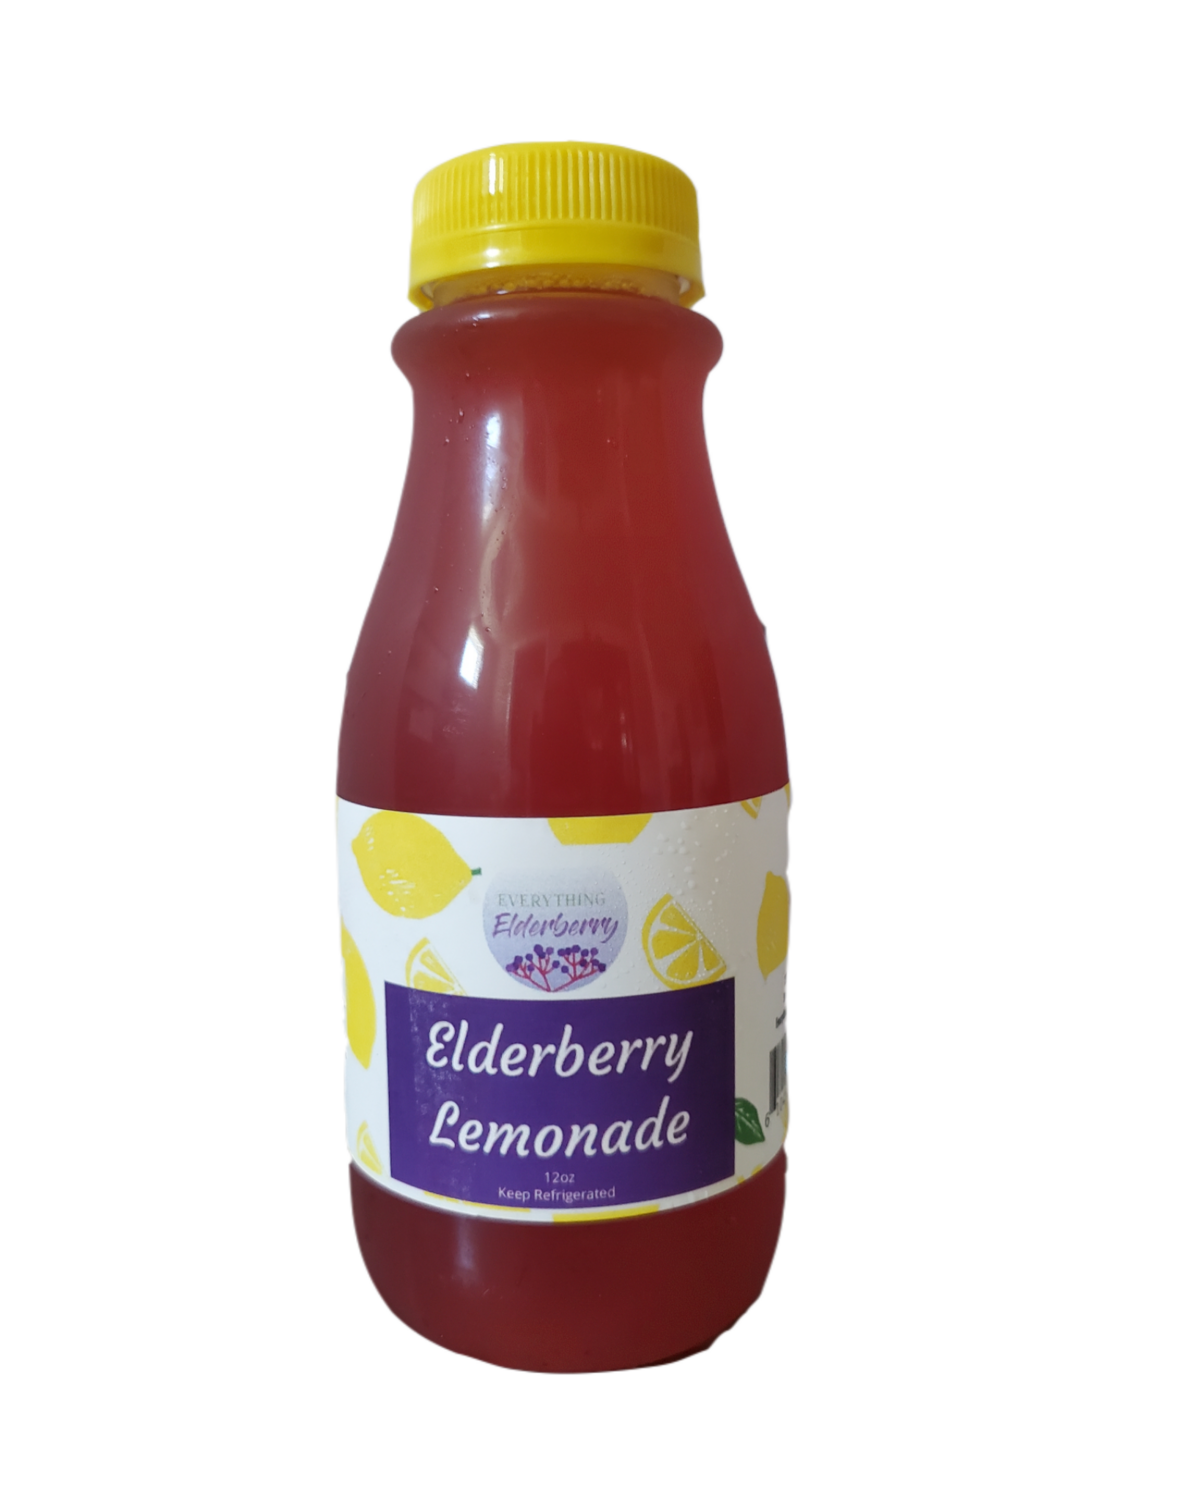 Elderberry Lemonade - not shippable